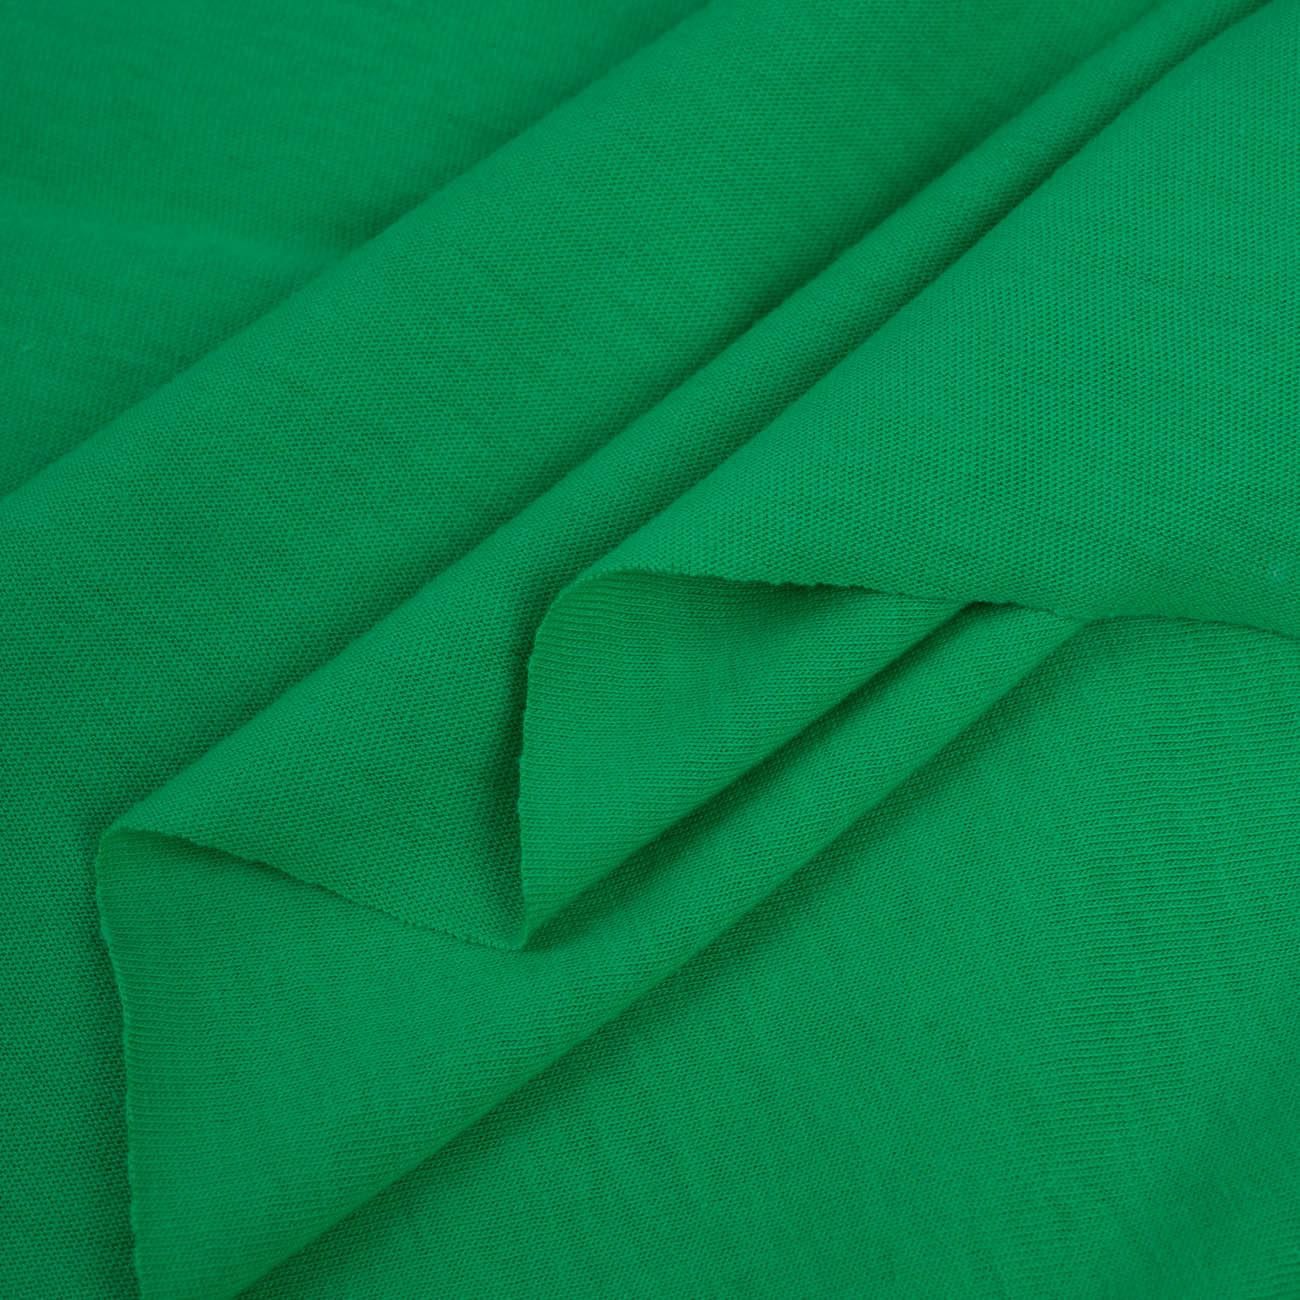 D-101 GREEN - T-shirt knit fabric 100% cotton T140